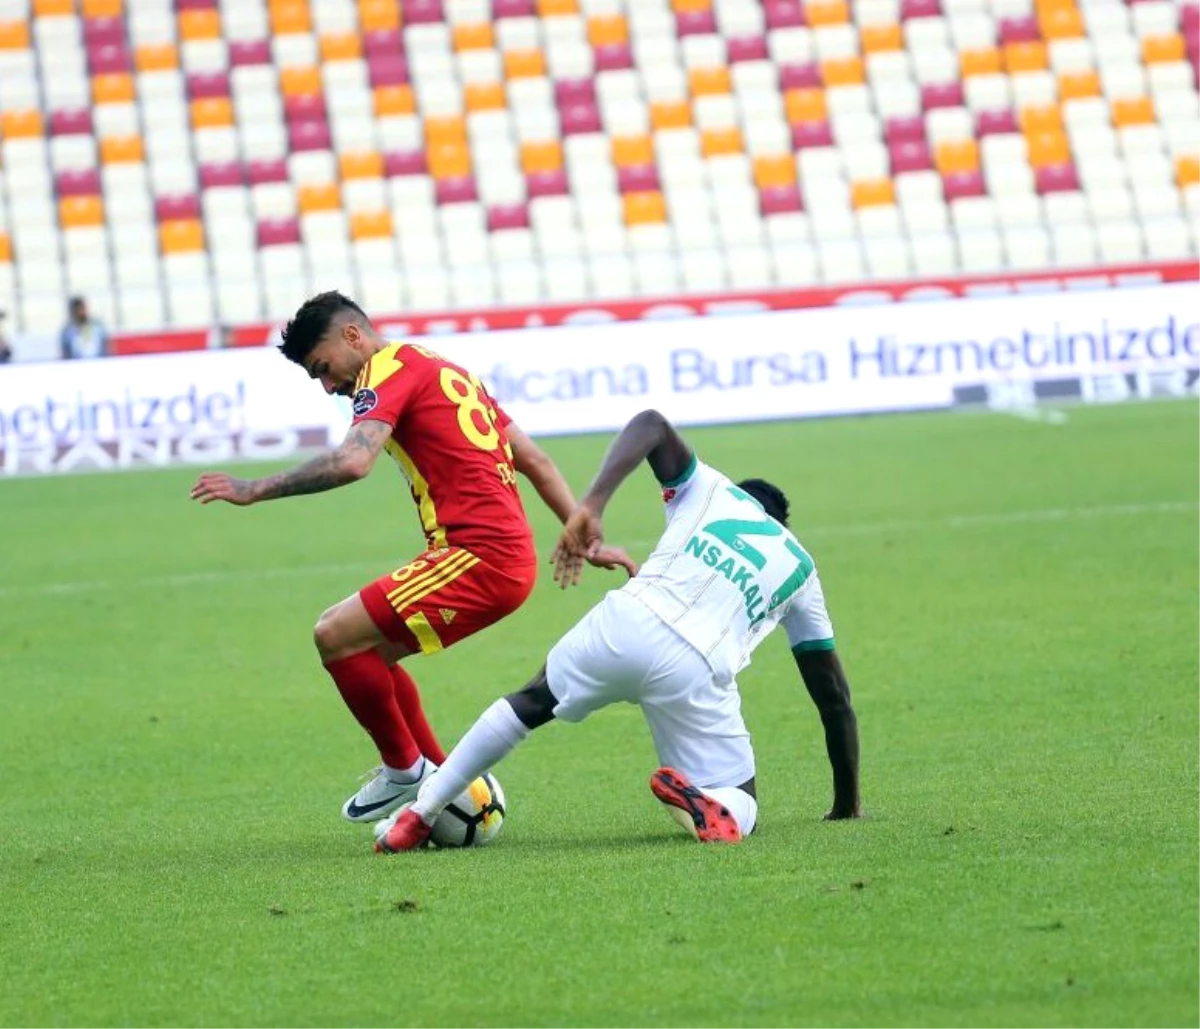 Spor Toto Süper Lig: Evkur Yeni Malatyaspor: 1 - Aytemiz Alanyaspor: 1 (Maç Sonucu)